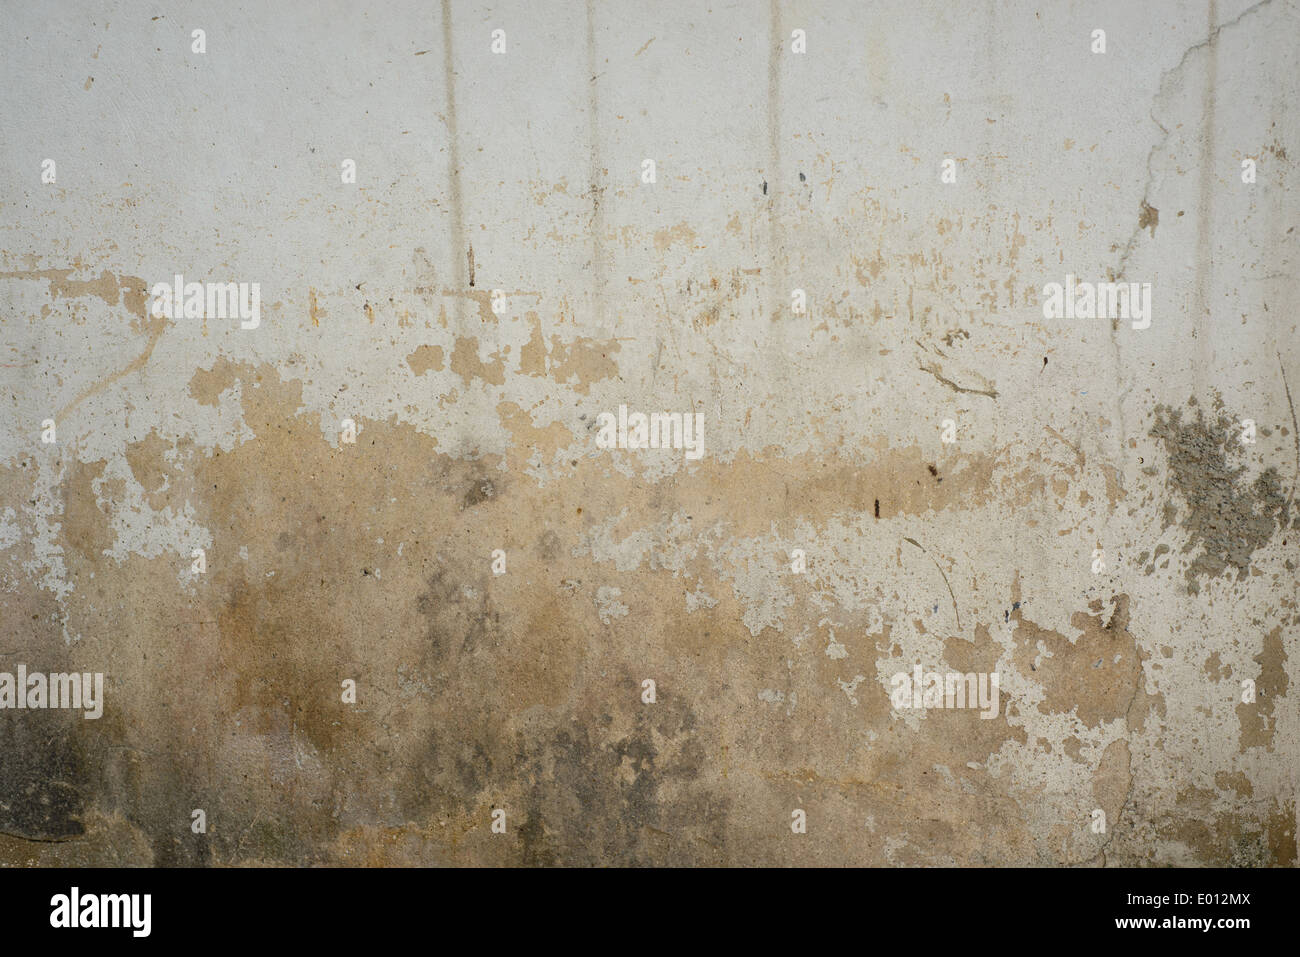 Un mur blanc avec de l'eau brune tache. Un résumé historique. Banque D'Images